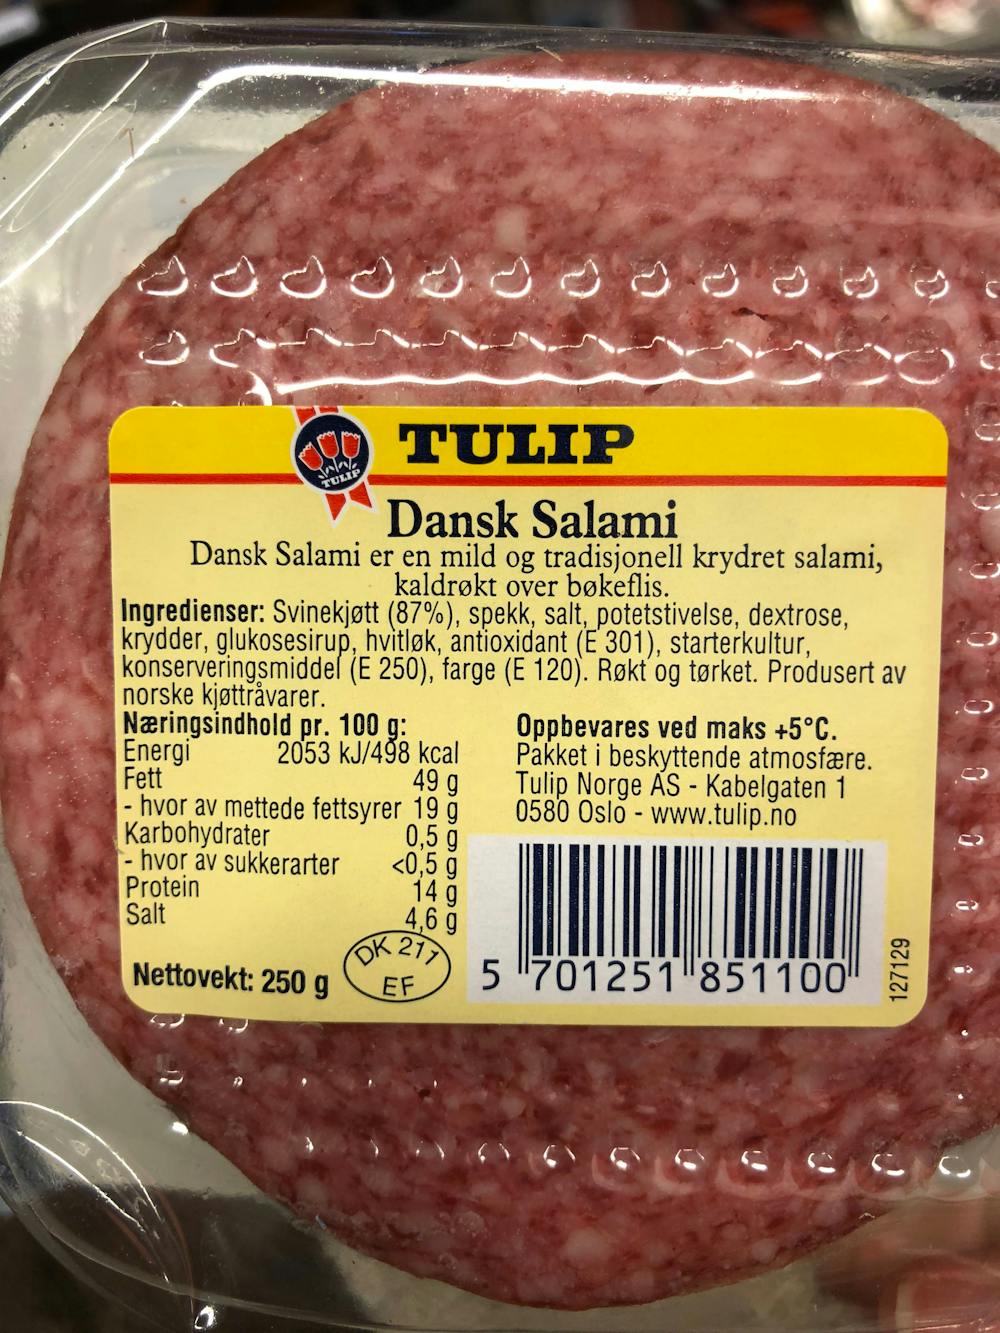 Ingredienslisten til Tulip Dansk salami